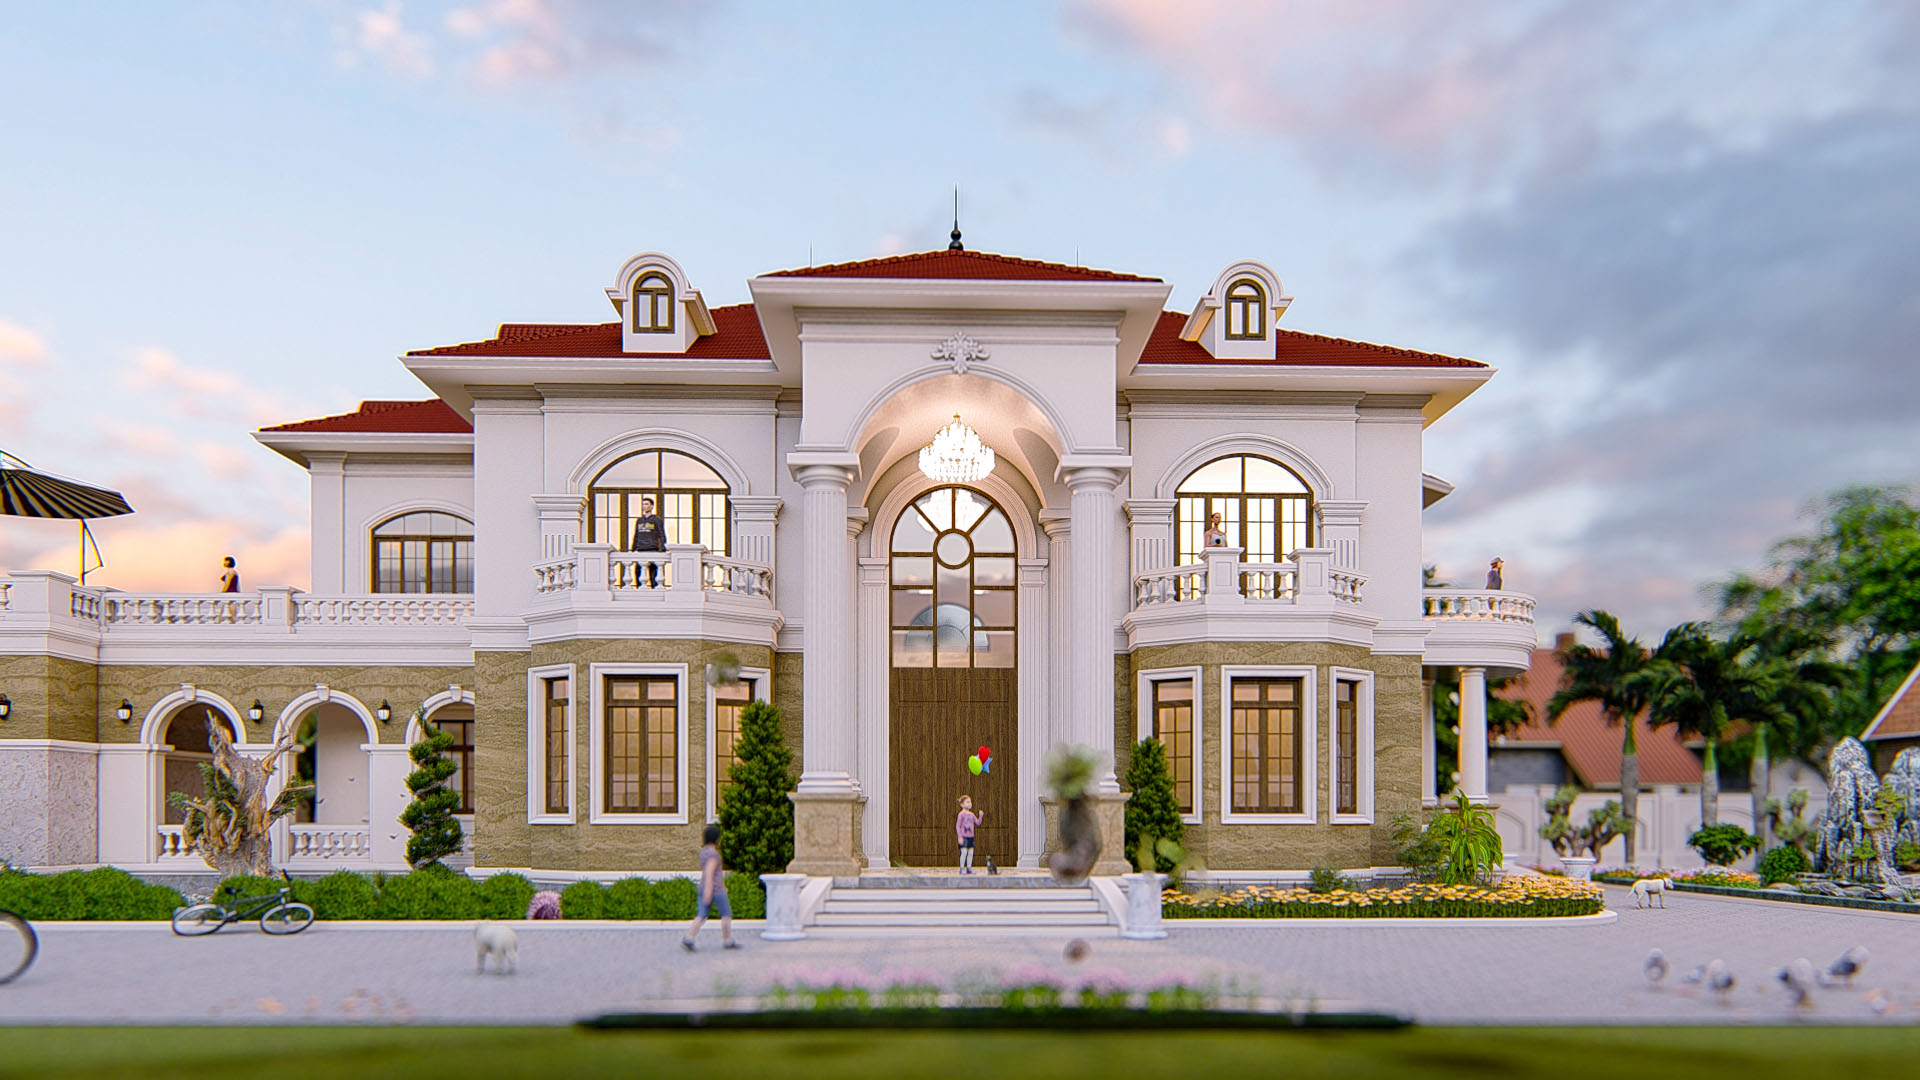 Thiết kế Biệt Thự tại Hà Nội BIỆT THỰ VƯỜN 1590719653 1